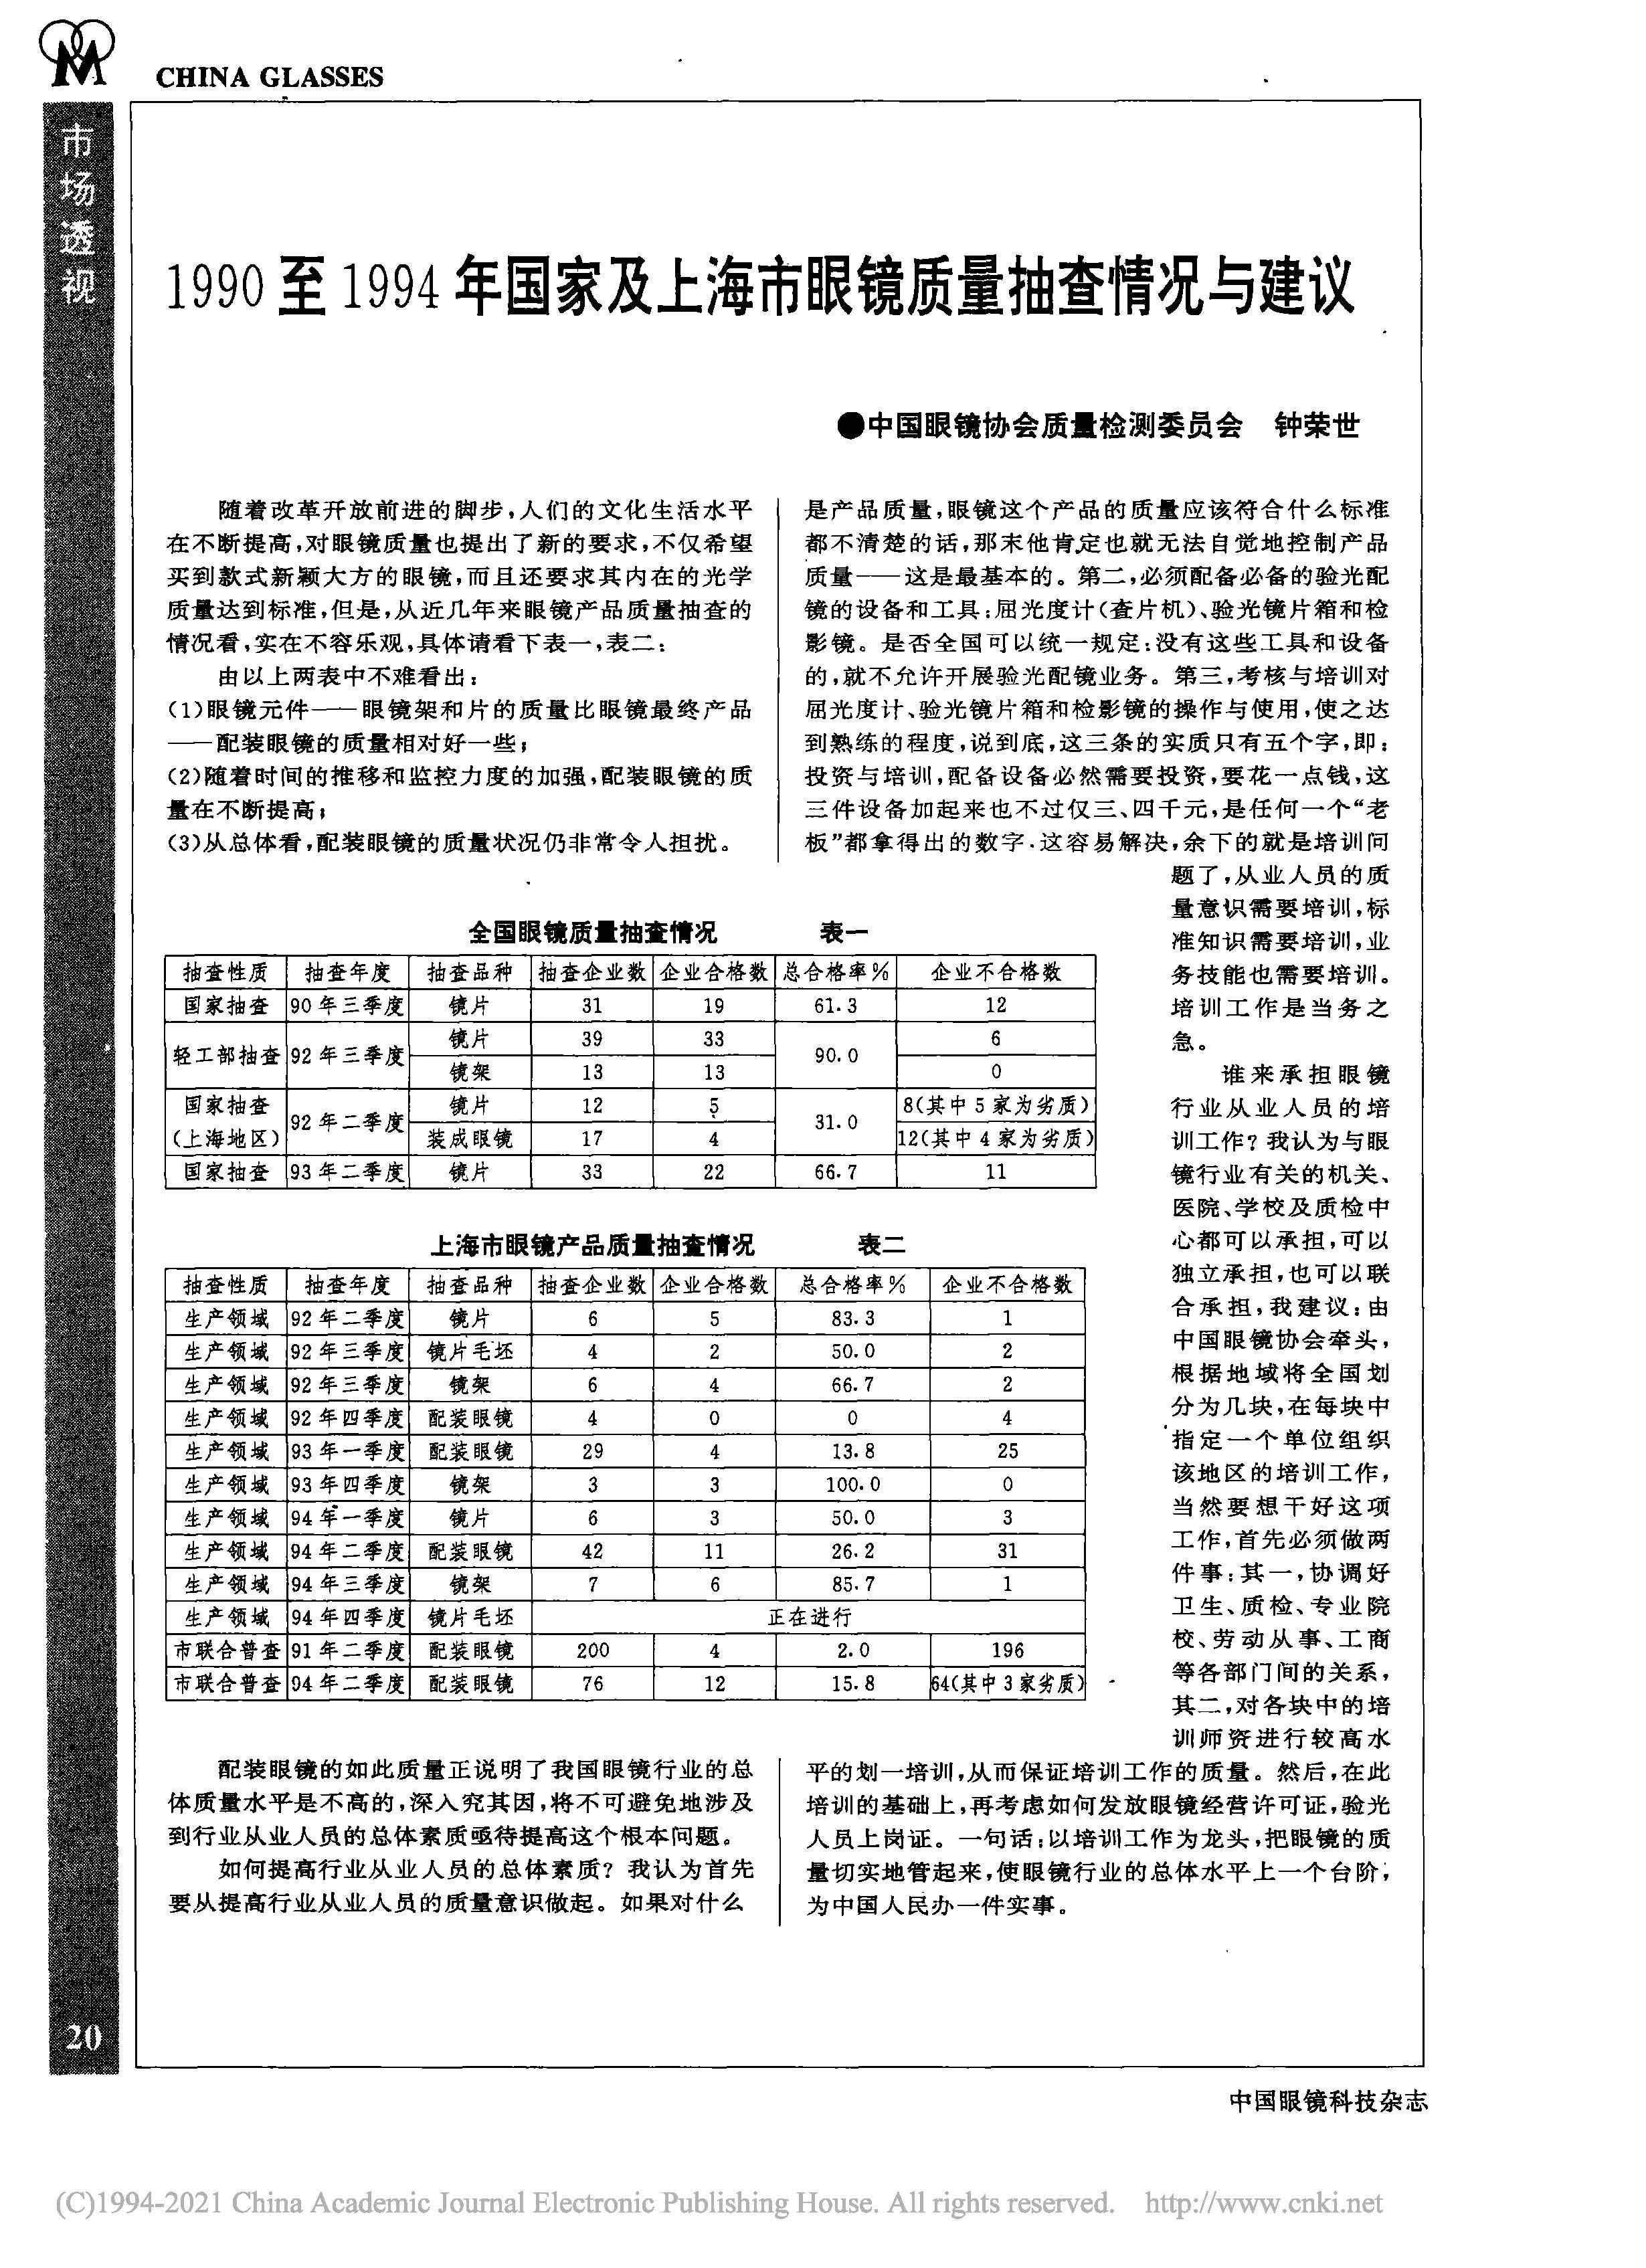 1990至1994年国家及上海市眼镜质量抽查情况与建议.jpg